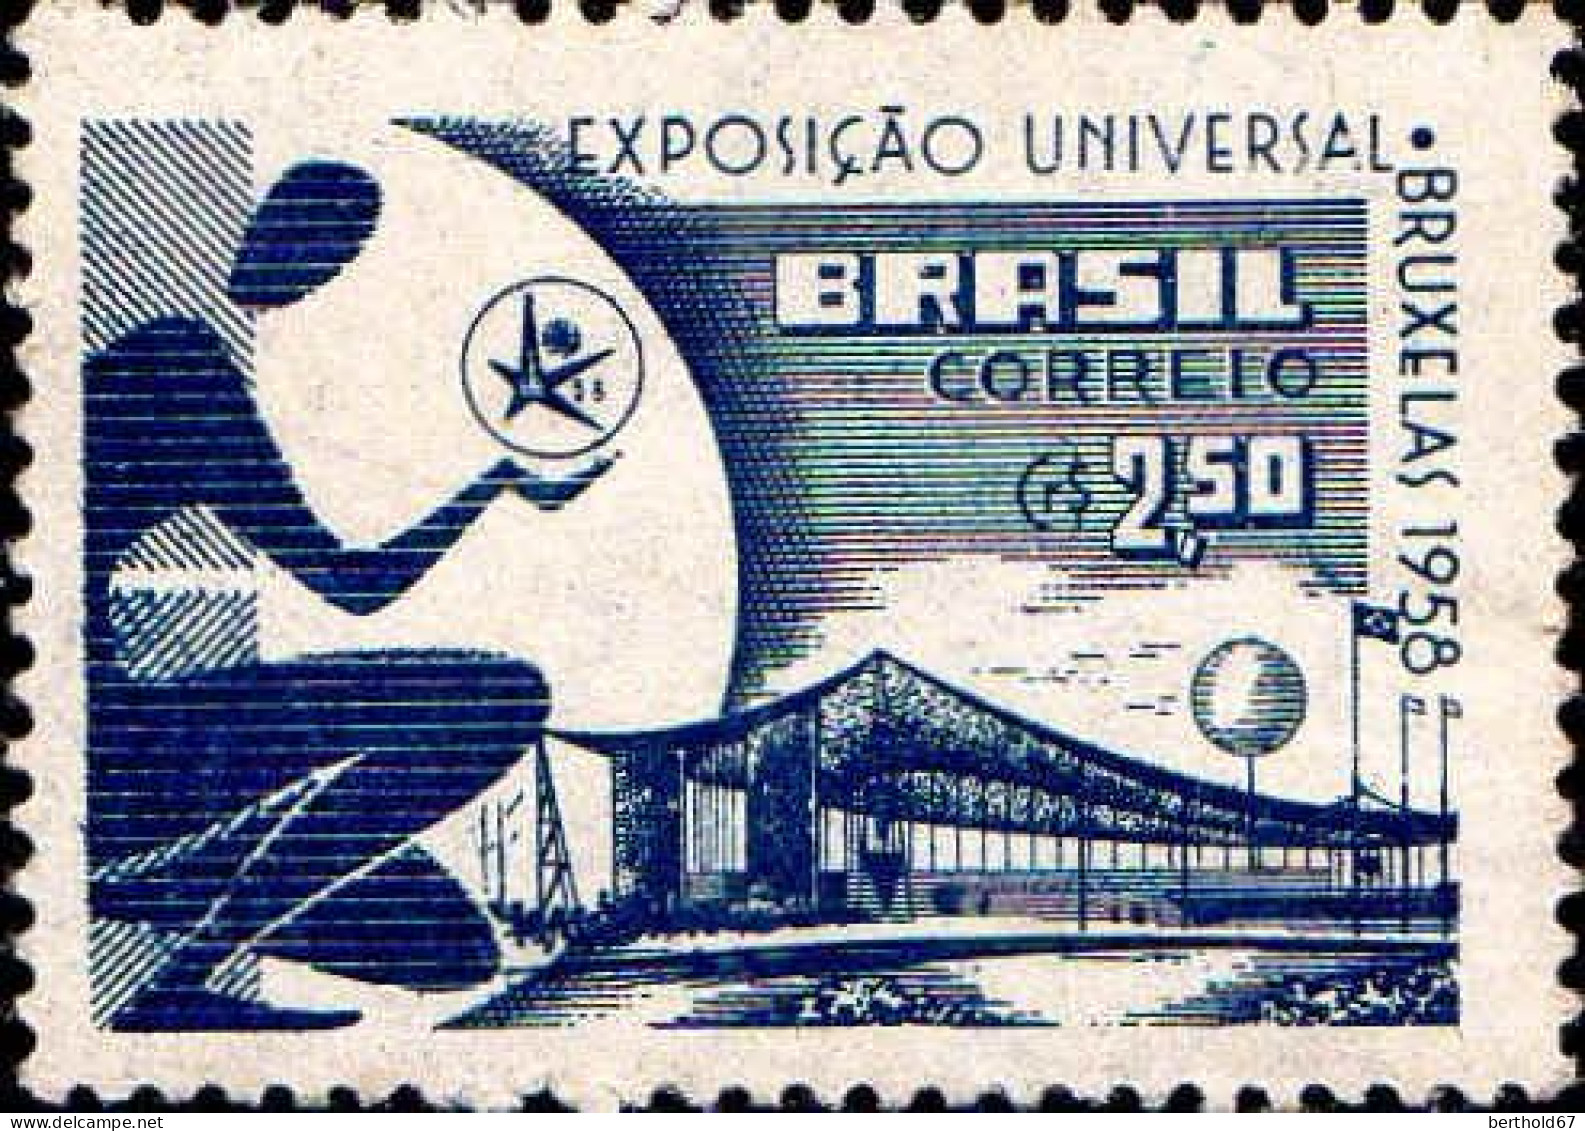 Brésil Poste N* Yv: 645 Mi: Bruxelas Pavillon Du Brésil (Trace De Charnière) - Unused Stamps